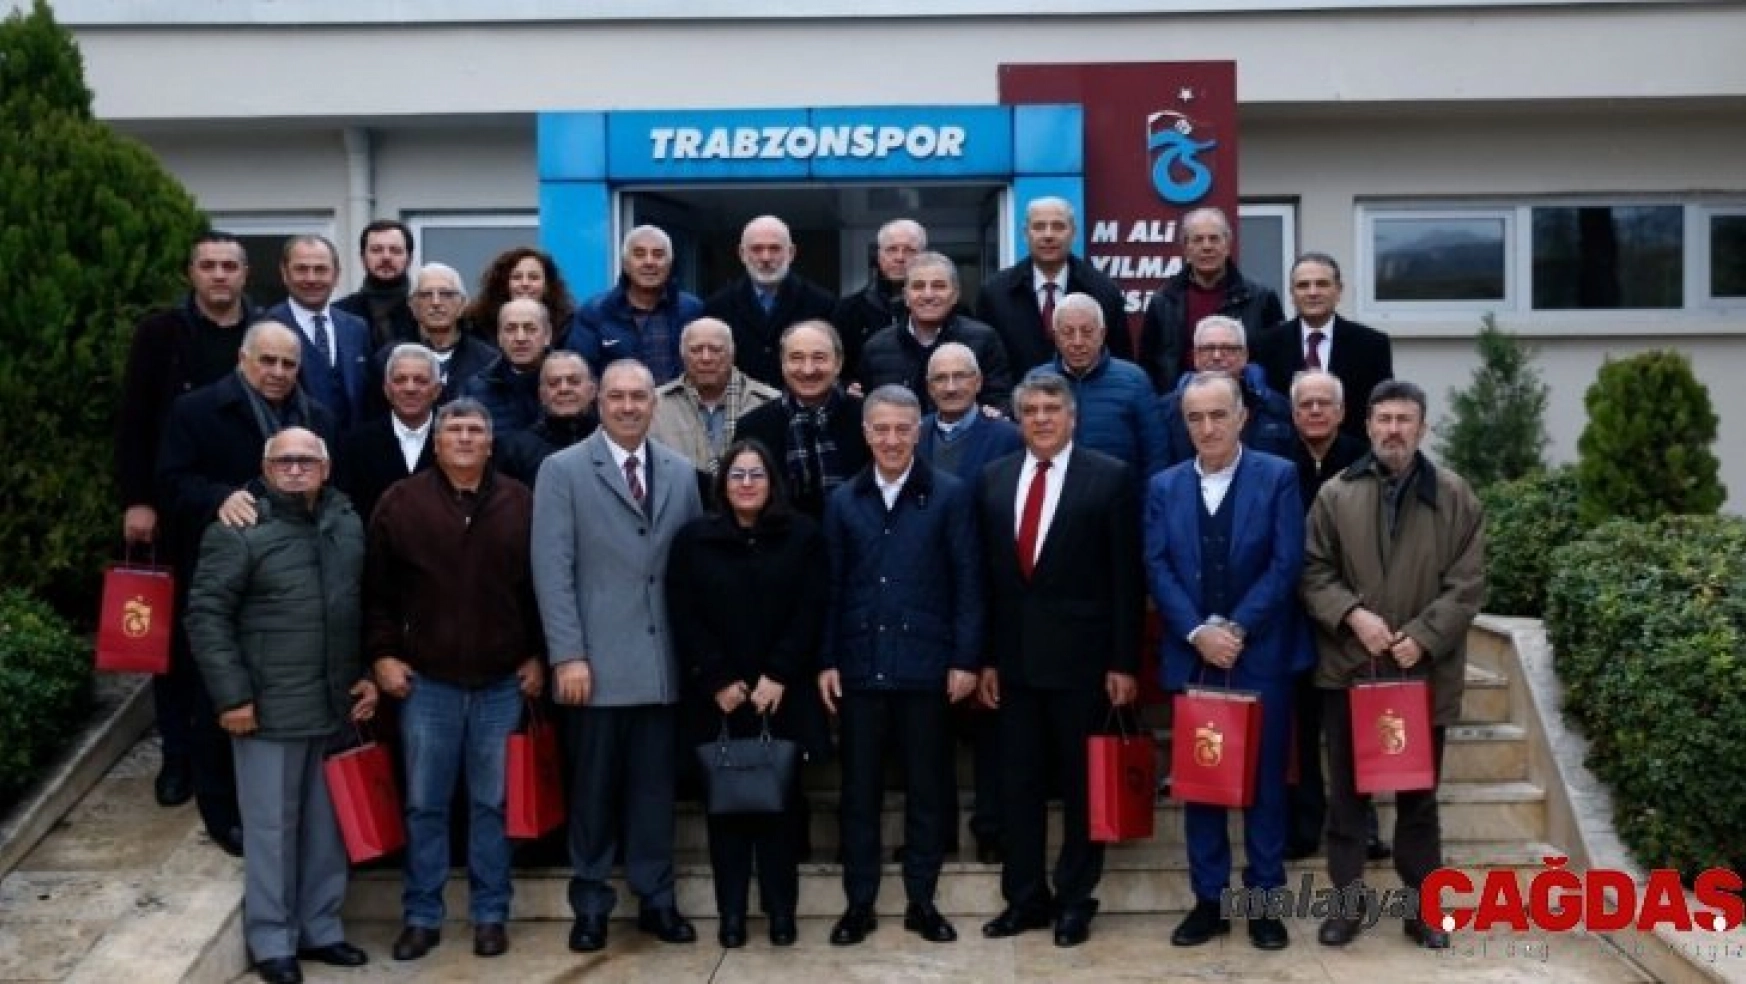 Trabzon'da 45 yıl sonra bir araya geldiler